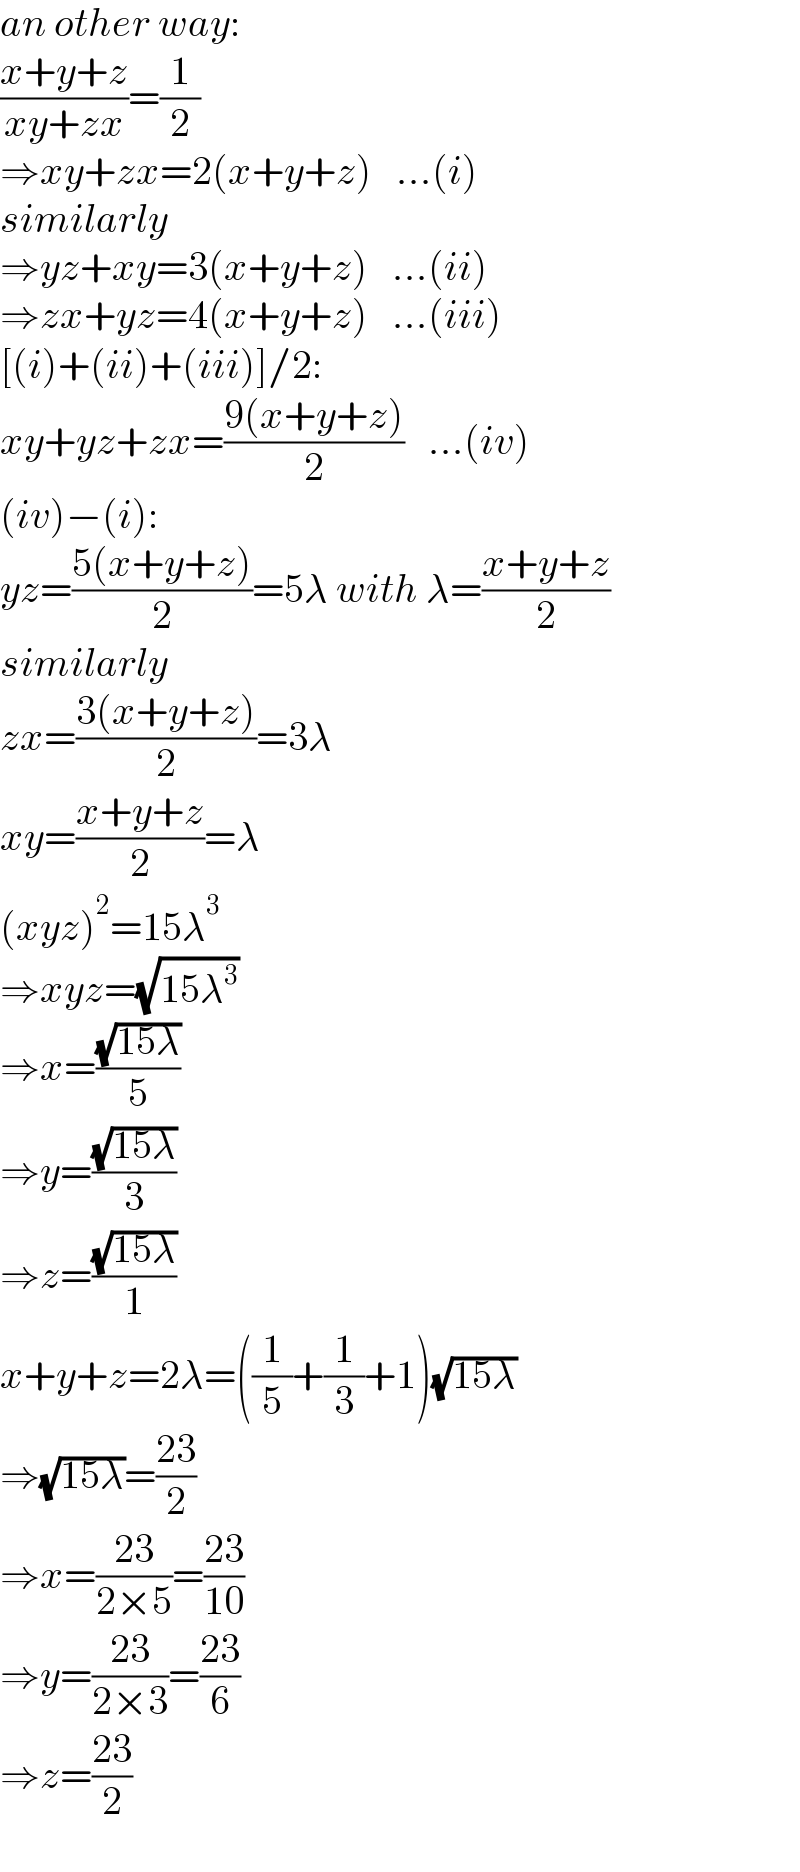 an other way:  ((x+y+z)/(xy+zx))=(1/2)   ⇒xy+zx=2(x+y+z)   ...(i)  similarly  ⇒yz+xy=3(x+y+z)   ...(ii)  ⇒zx+yz=4(x+y+z)   ...(iii)  [(i)+(ii)+(iii)]/2:  xy+yz+zx=((9(x+y+z))/2)   ...(iv)  (iv)−(i):  yz=((5(x+y+z))/2)=5λ with λ=((x+y+z)/2)  similarly  zx=((3(x+y+z))/2)=3λ  xy=((x+y+z)/2)=λ  (xyz)^2 =15λ^3   ⇒xyz=(√(15λ^3 ))  ⇒x=((√(15λ))/5)  ⇒y=((√(15λ))/3)  ⇒z=((√(15λ))/1)  x+y+z=2λ=((1/5)+(1/3)+1)(√(15λ))  ⇒(√(15λ))=((23)/2)  ⇒x=((23)/(2×5))=((23)/(10))  ⇒y=((23)/(2×3))=((23)/6)  ⇒z=((23)/2)  